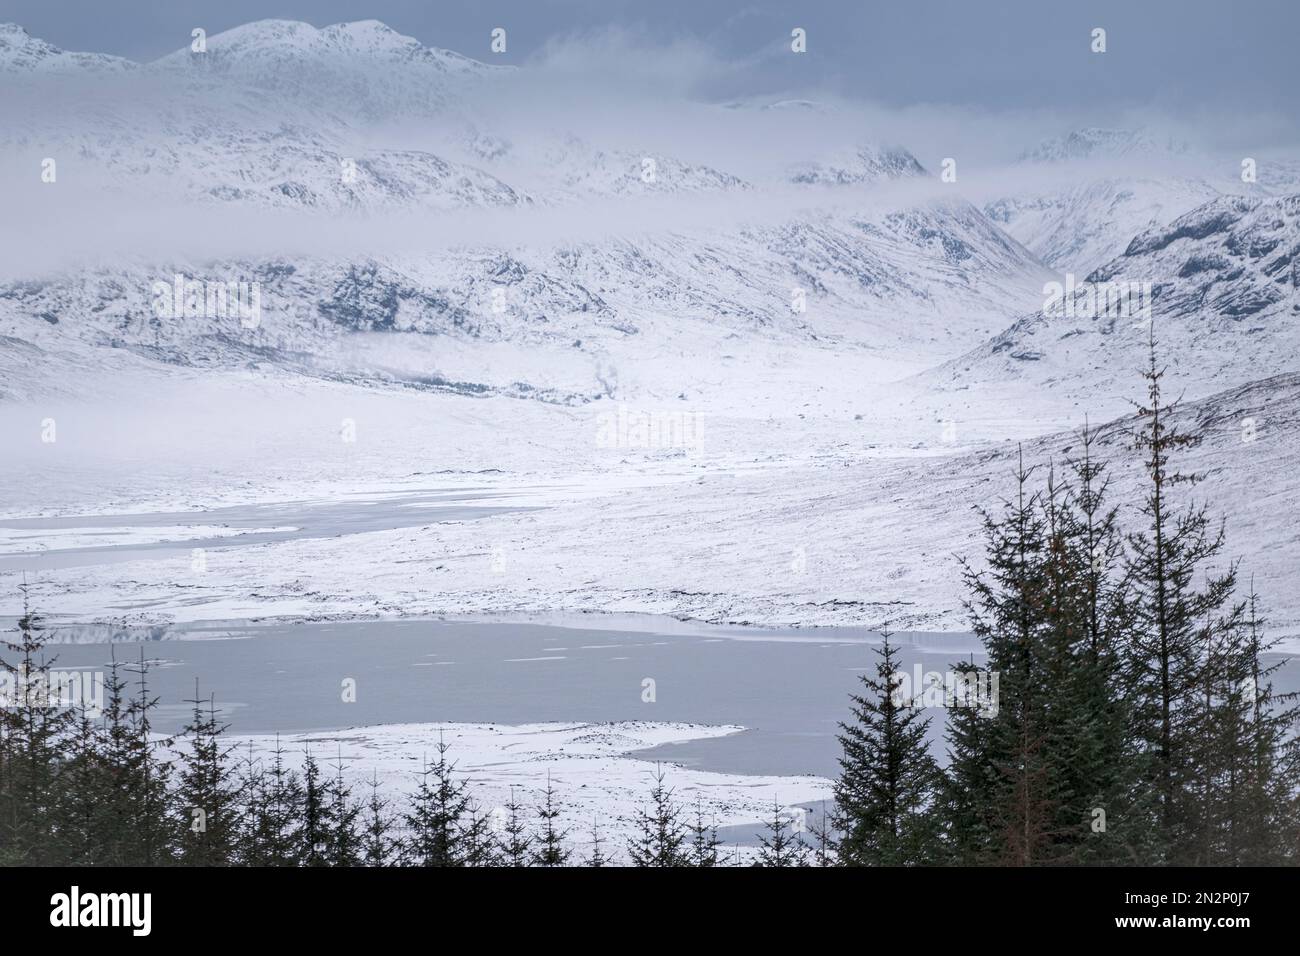 Royaume-Uni, Écosse, Highlands, vue surélevée sur le lac Loch Loyne, la montagne Gleouraich et les montagnes enneigées Banque D'Images